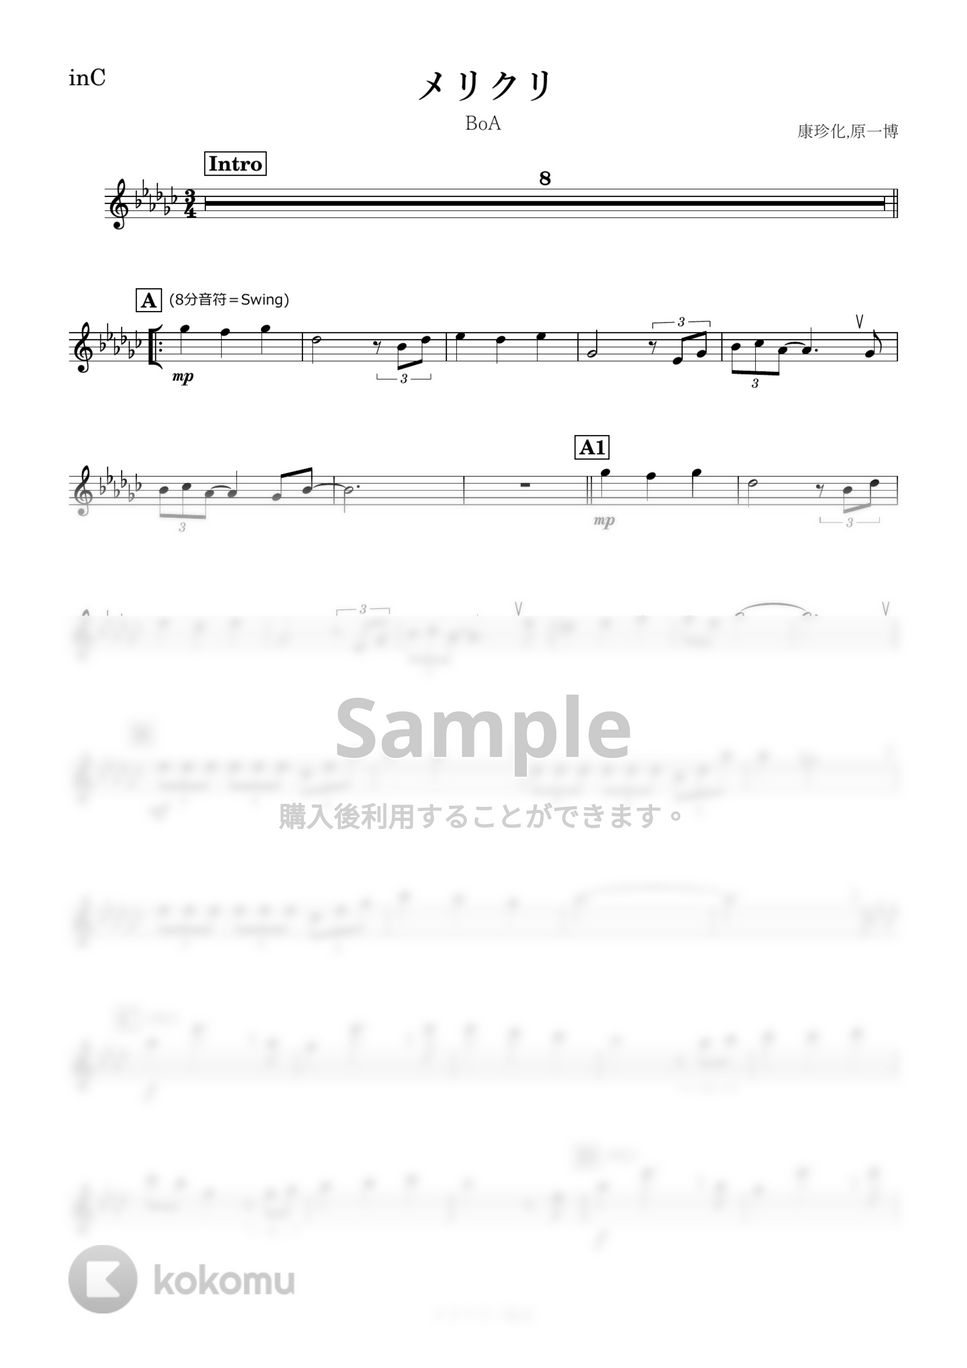 BoA - メリクリ (C) by kanamusic